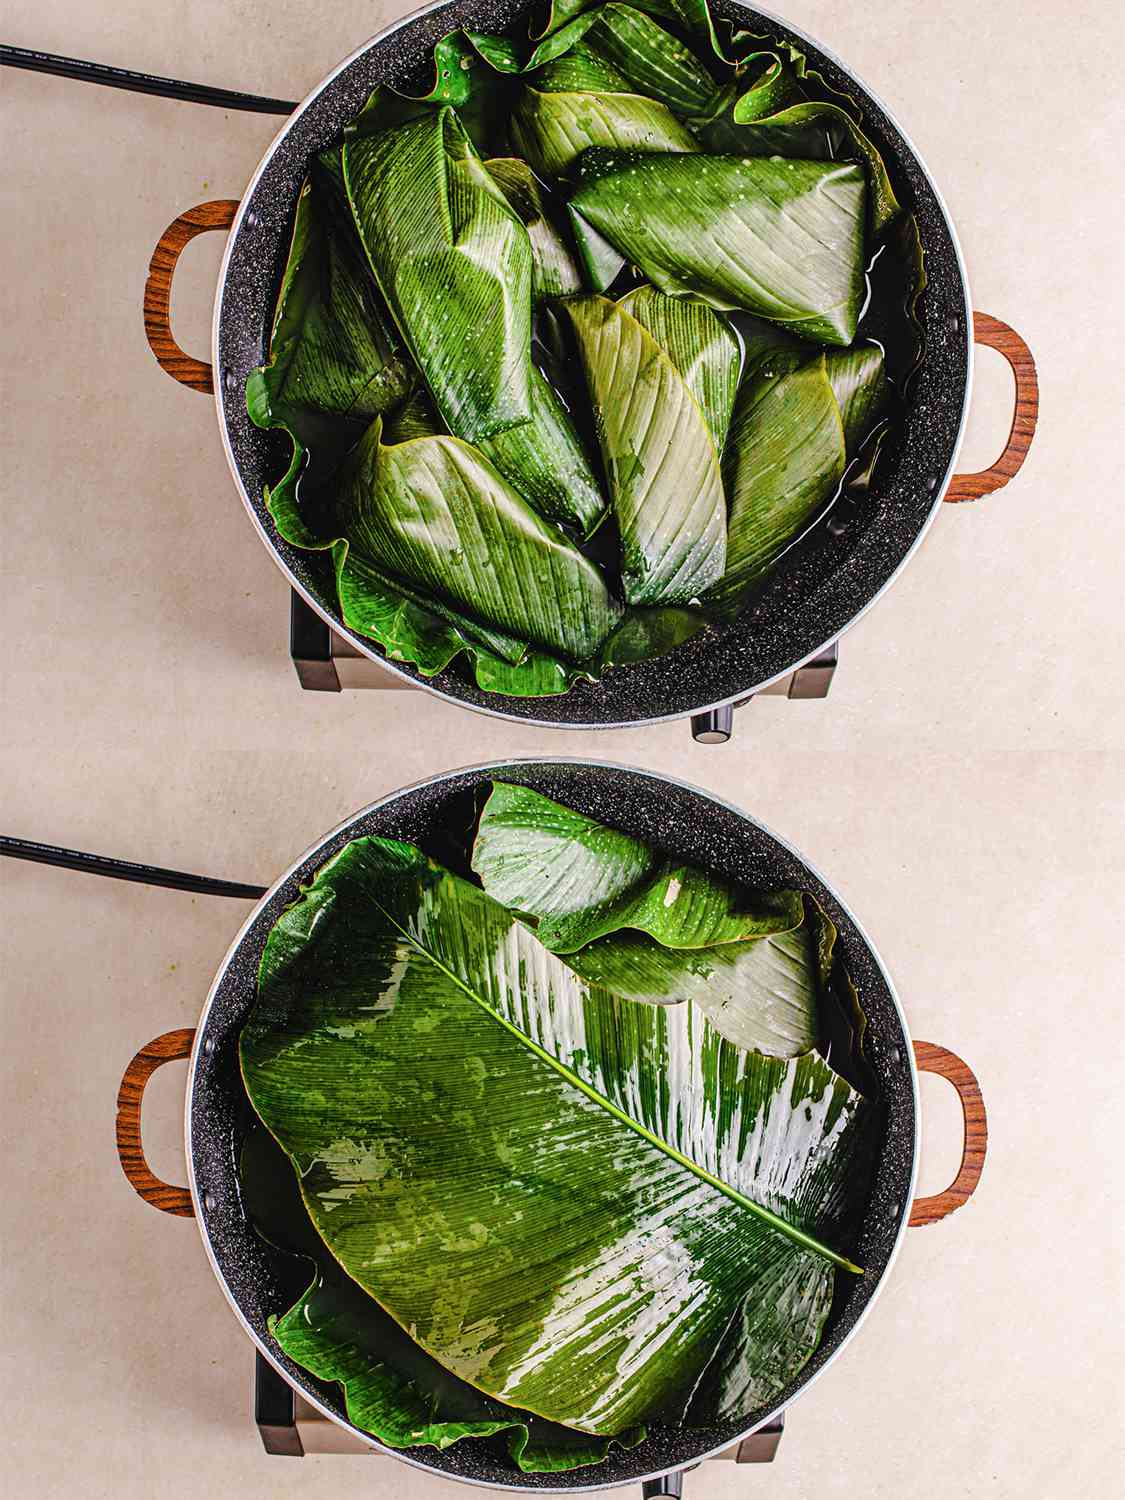 两张图片拼贴的moin moin在被叶子覆盖之前和之后在一个锅的俯视图